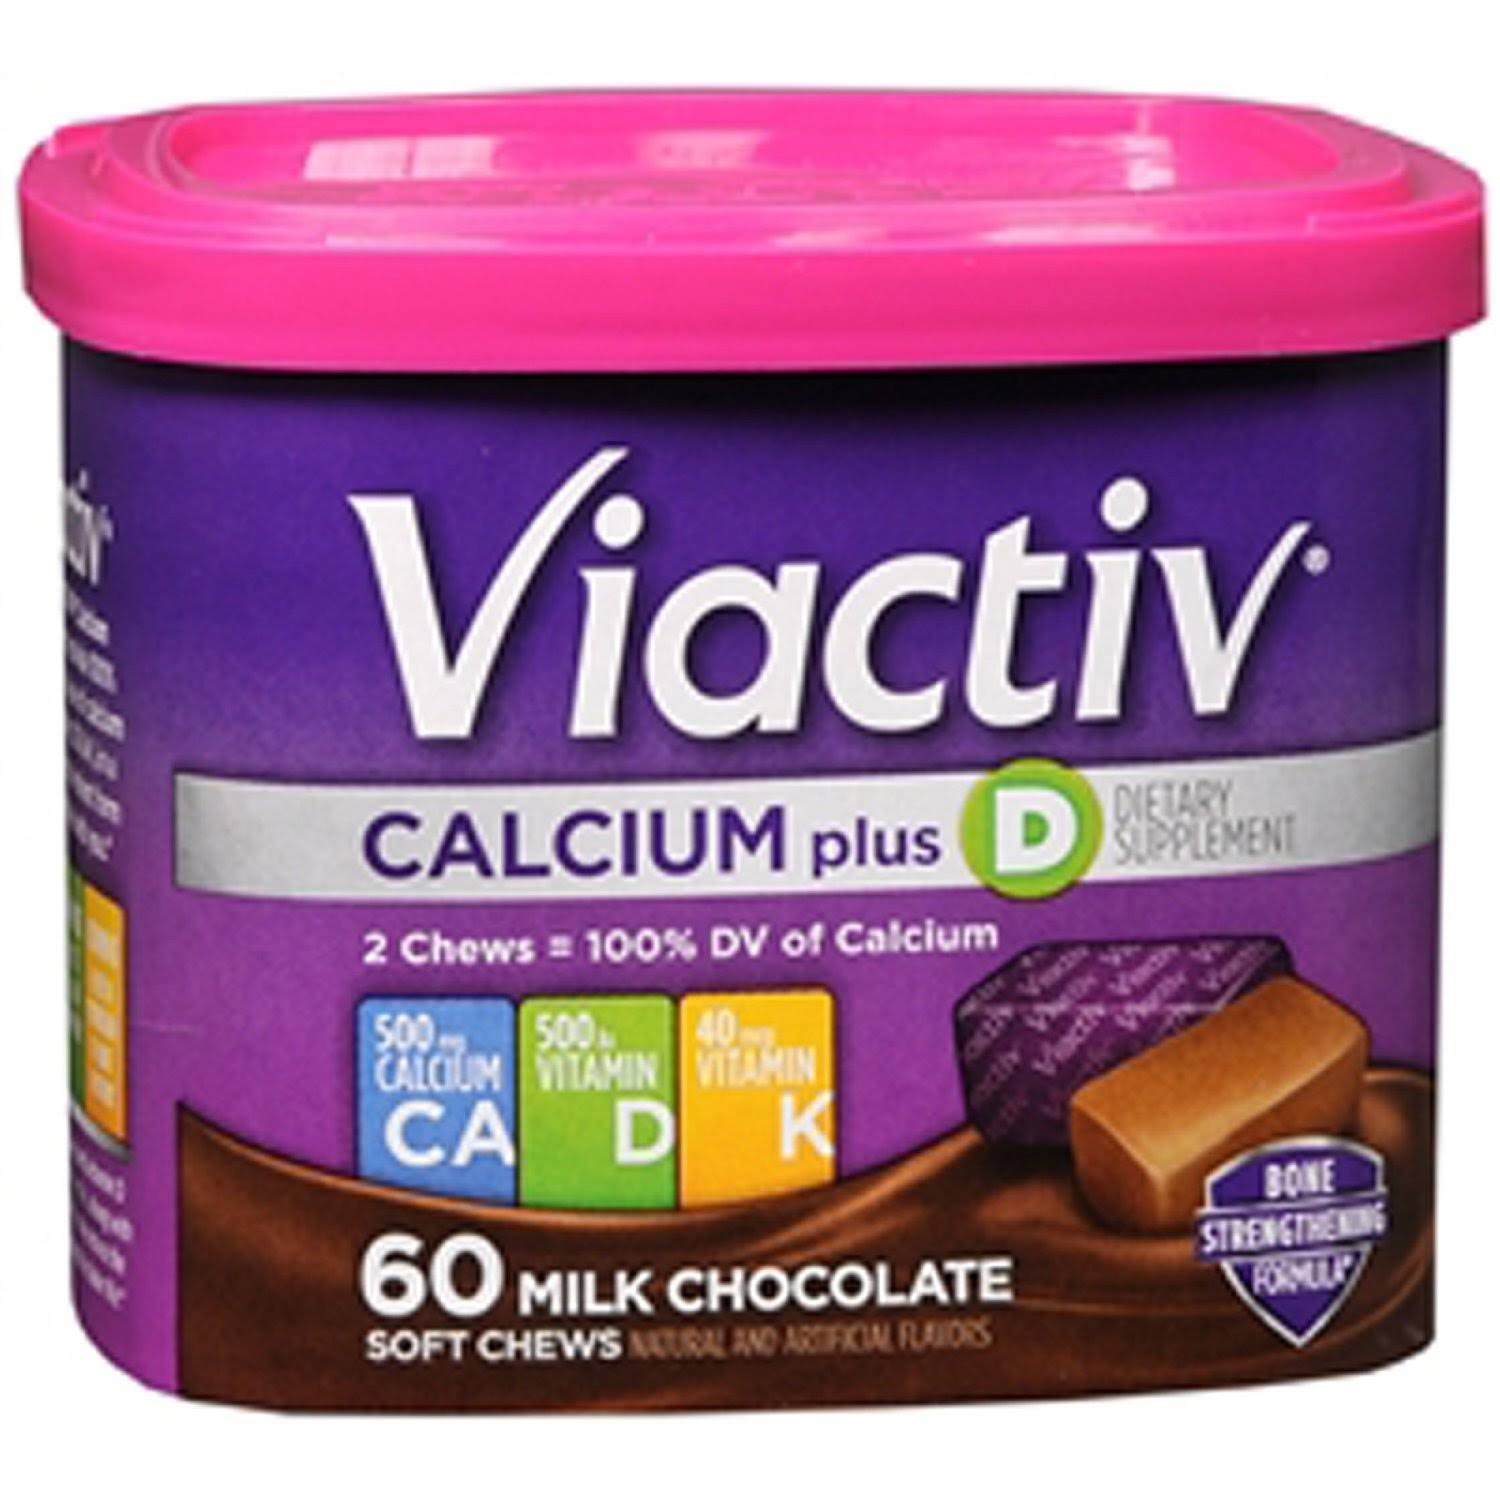 Viactiv Calcium Plus D Dietary Supplement - Milk Chocolate, 60 Soft Chews